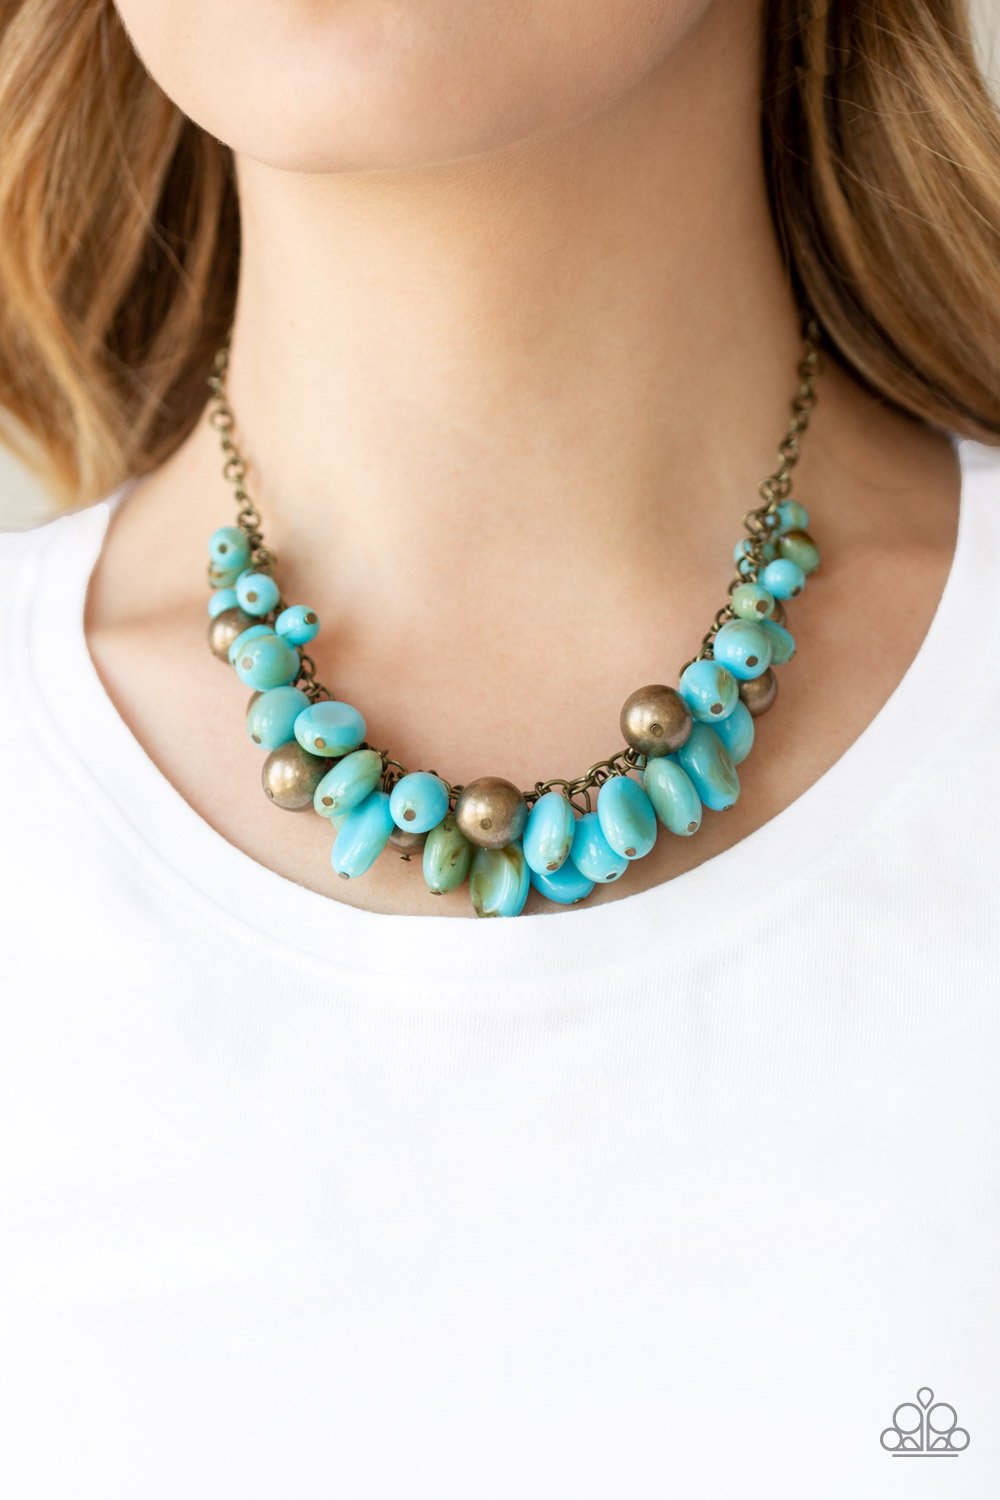 Full Out Fringe - blue - Paparazzi necklace